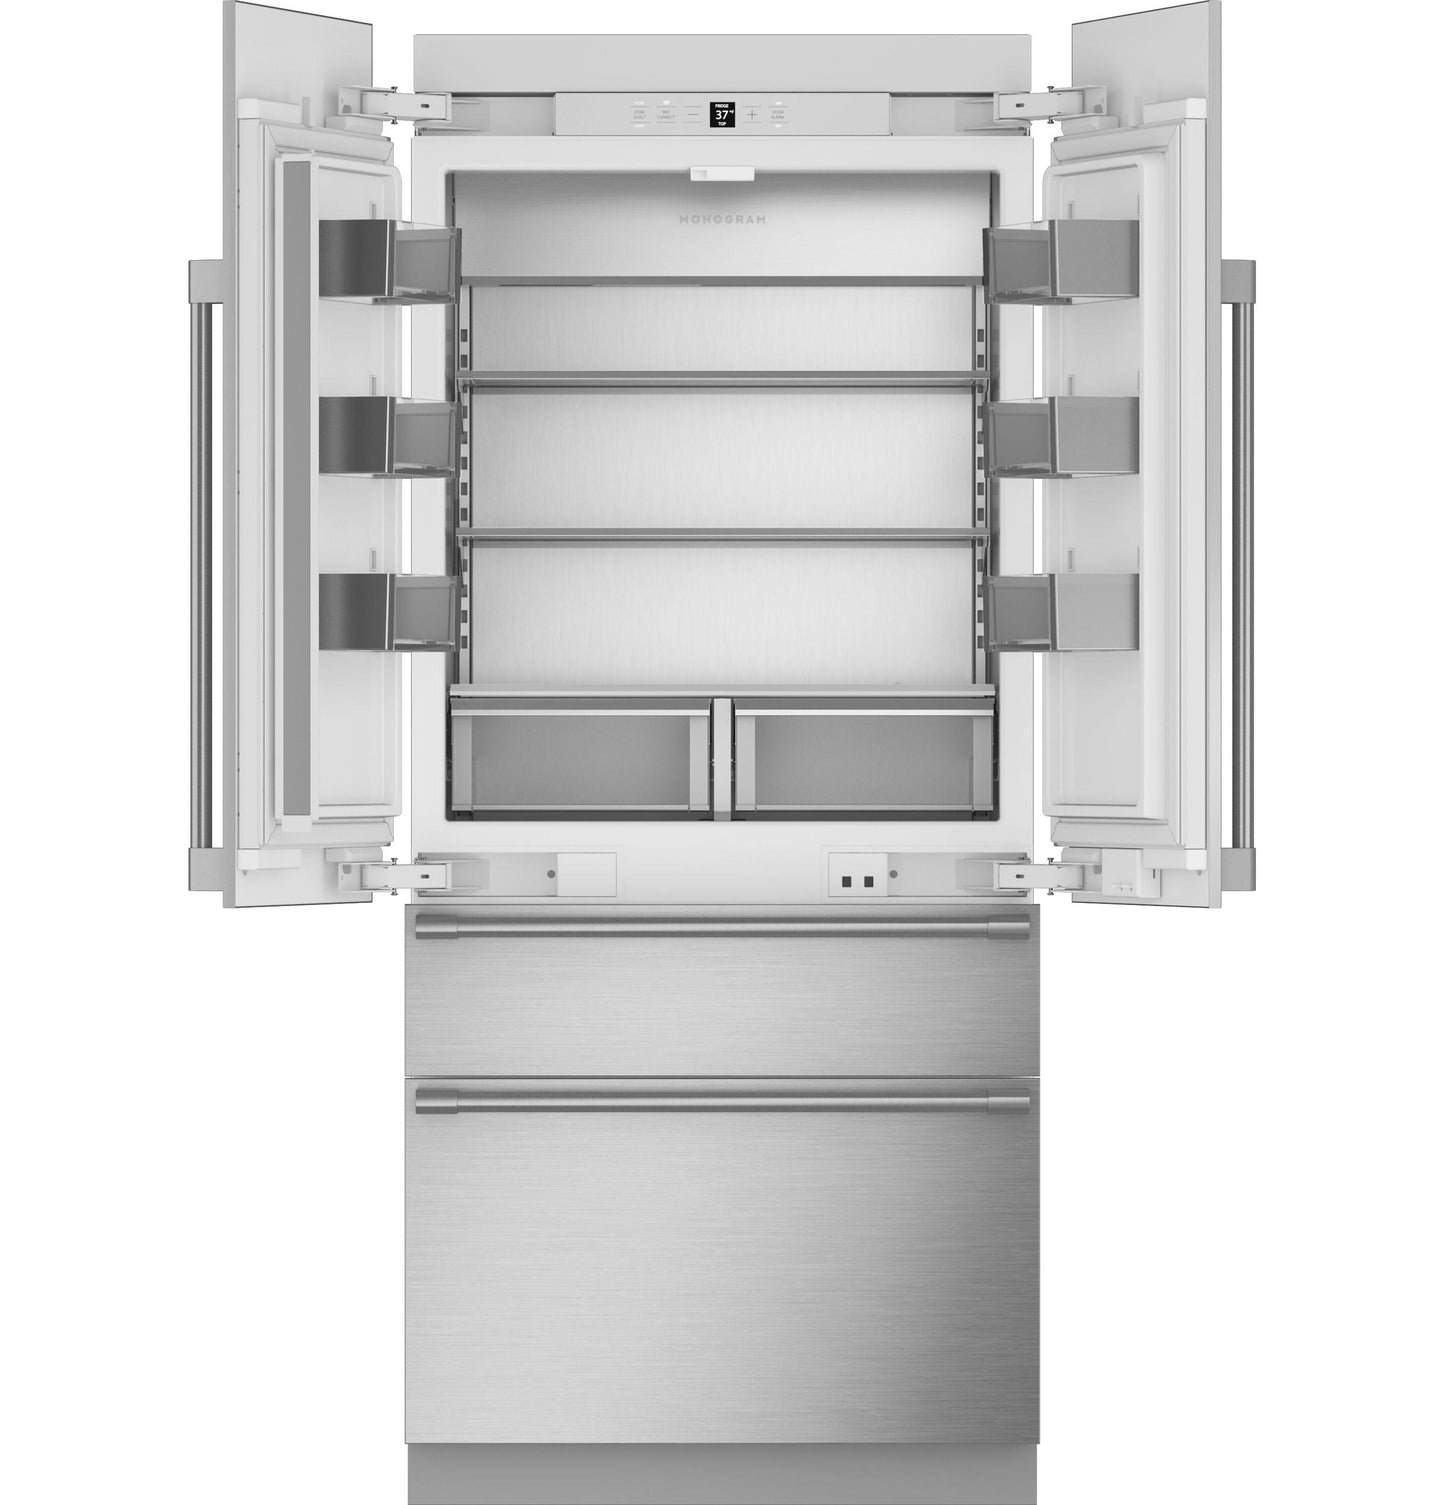 Monogram ZIP364NBVII Monogram 36" Integrated French-Door Refrigerator - Coming Soon